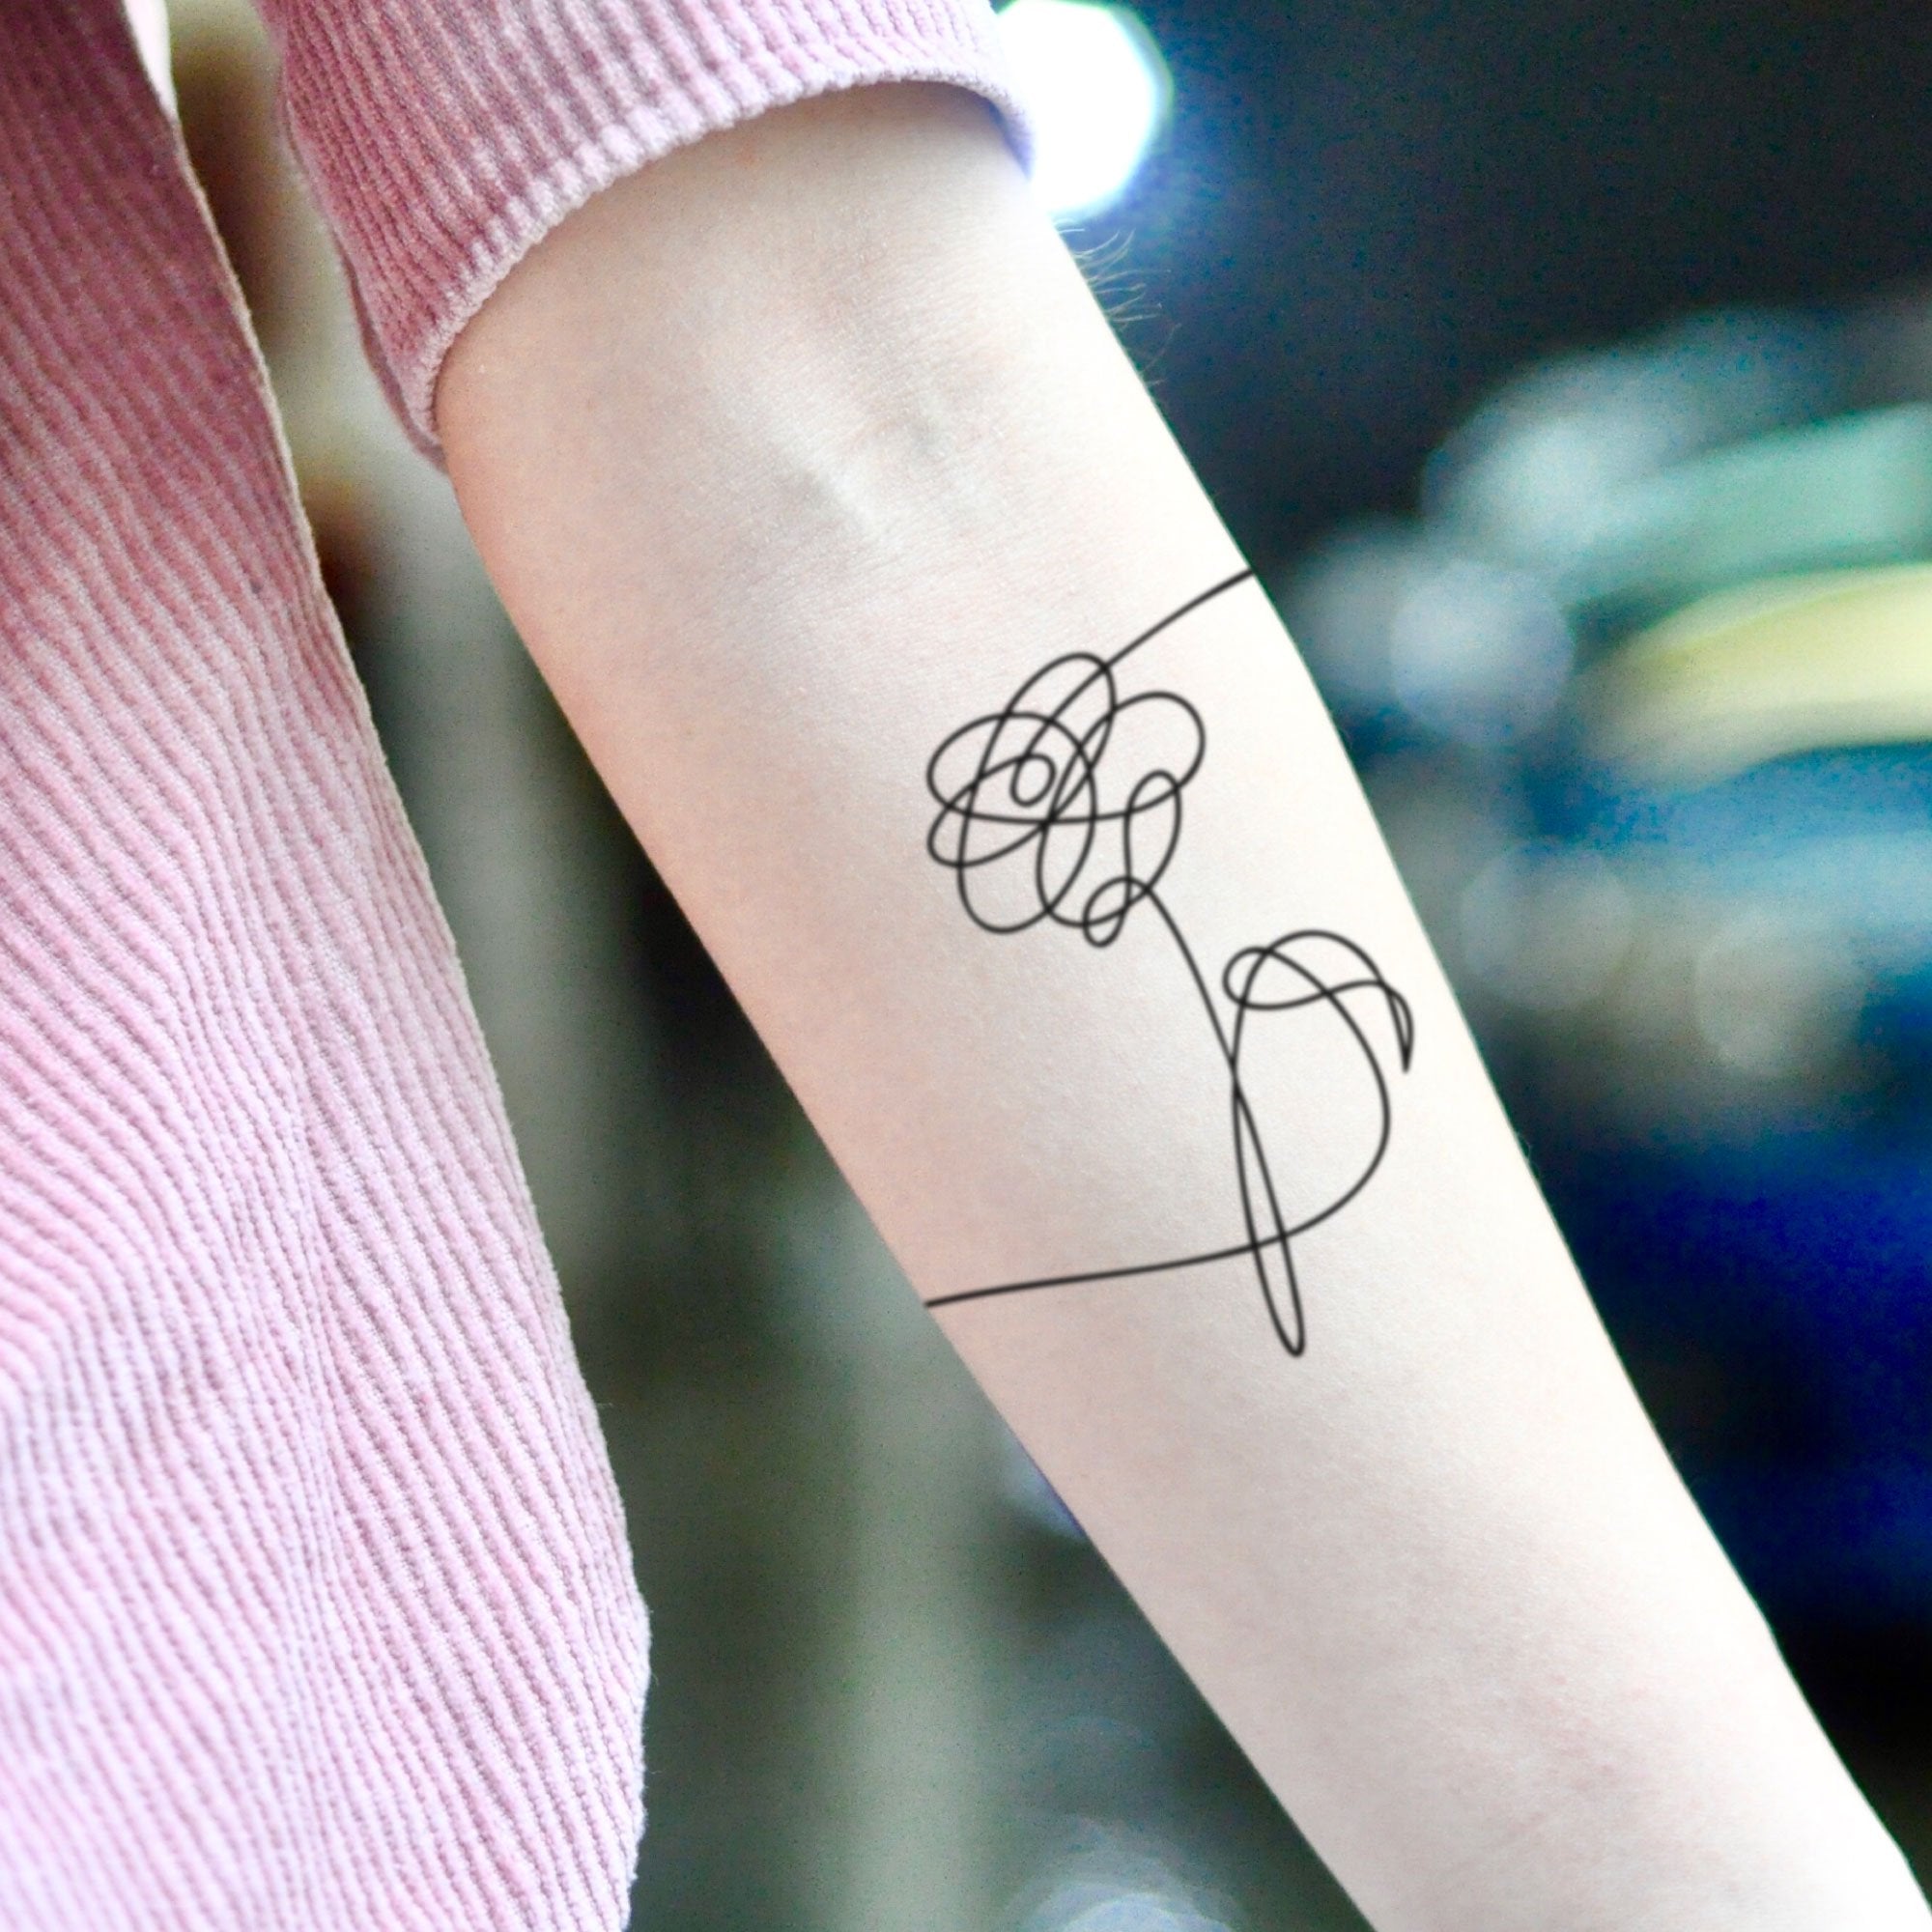 BTS Tattoo Design Idea  OhMyTat